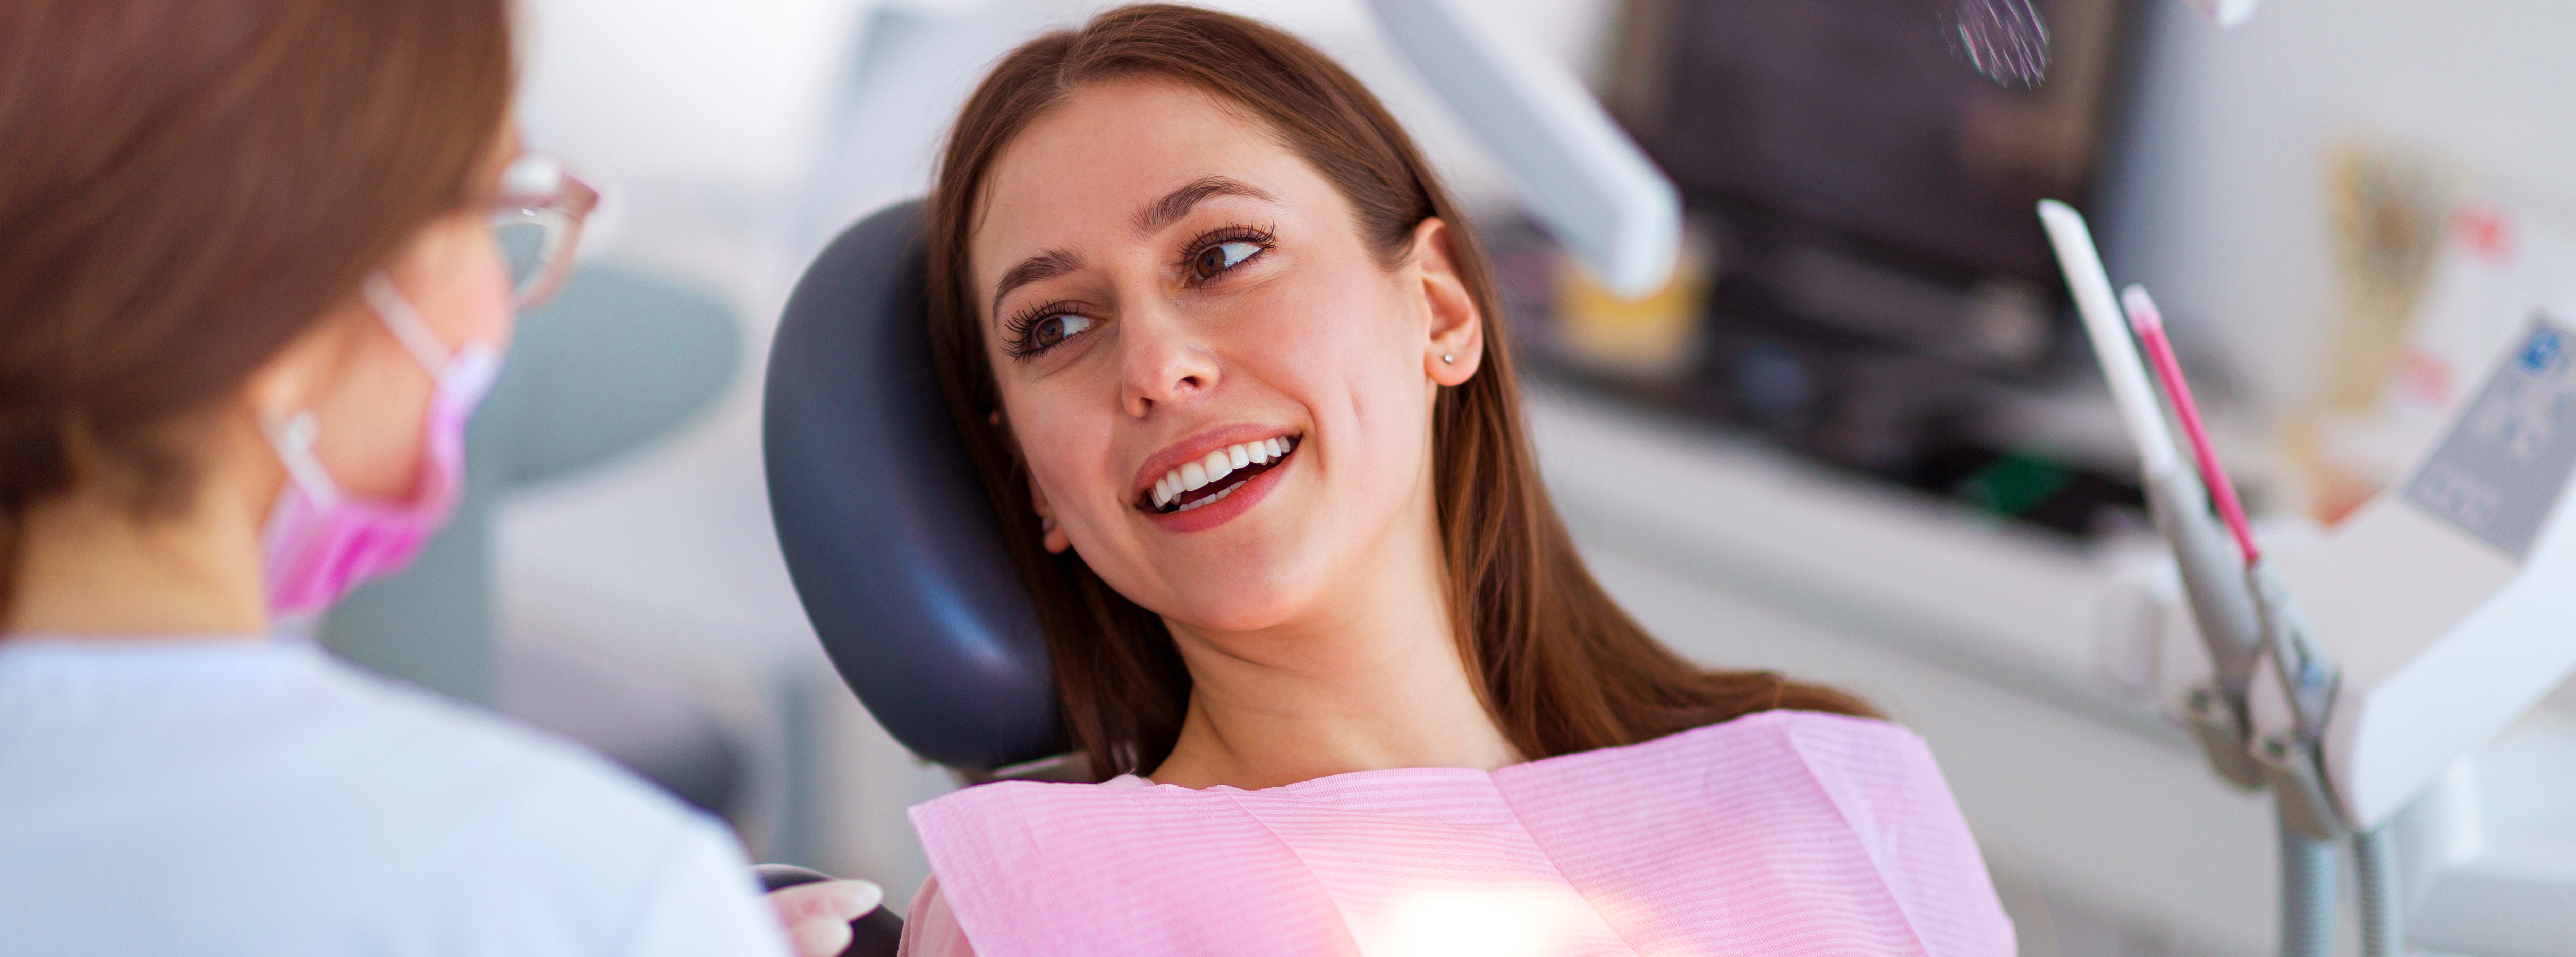 Luftreiniger in Zahnarztpraxis oder Arztpraxis